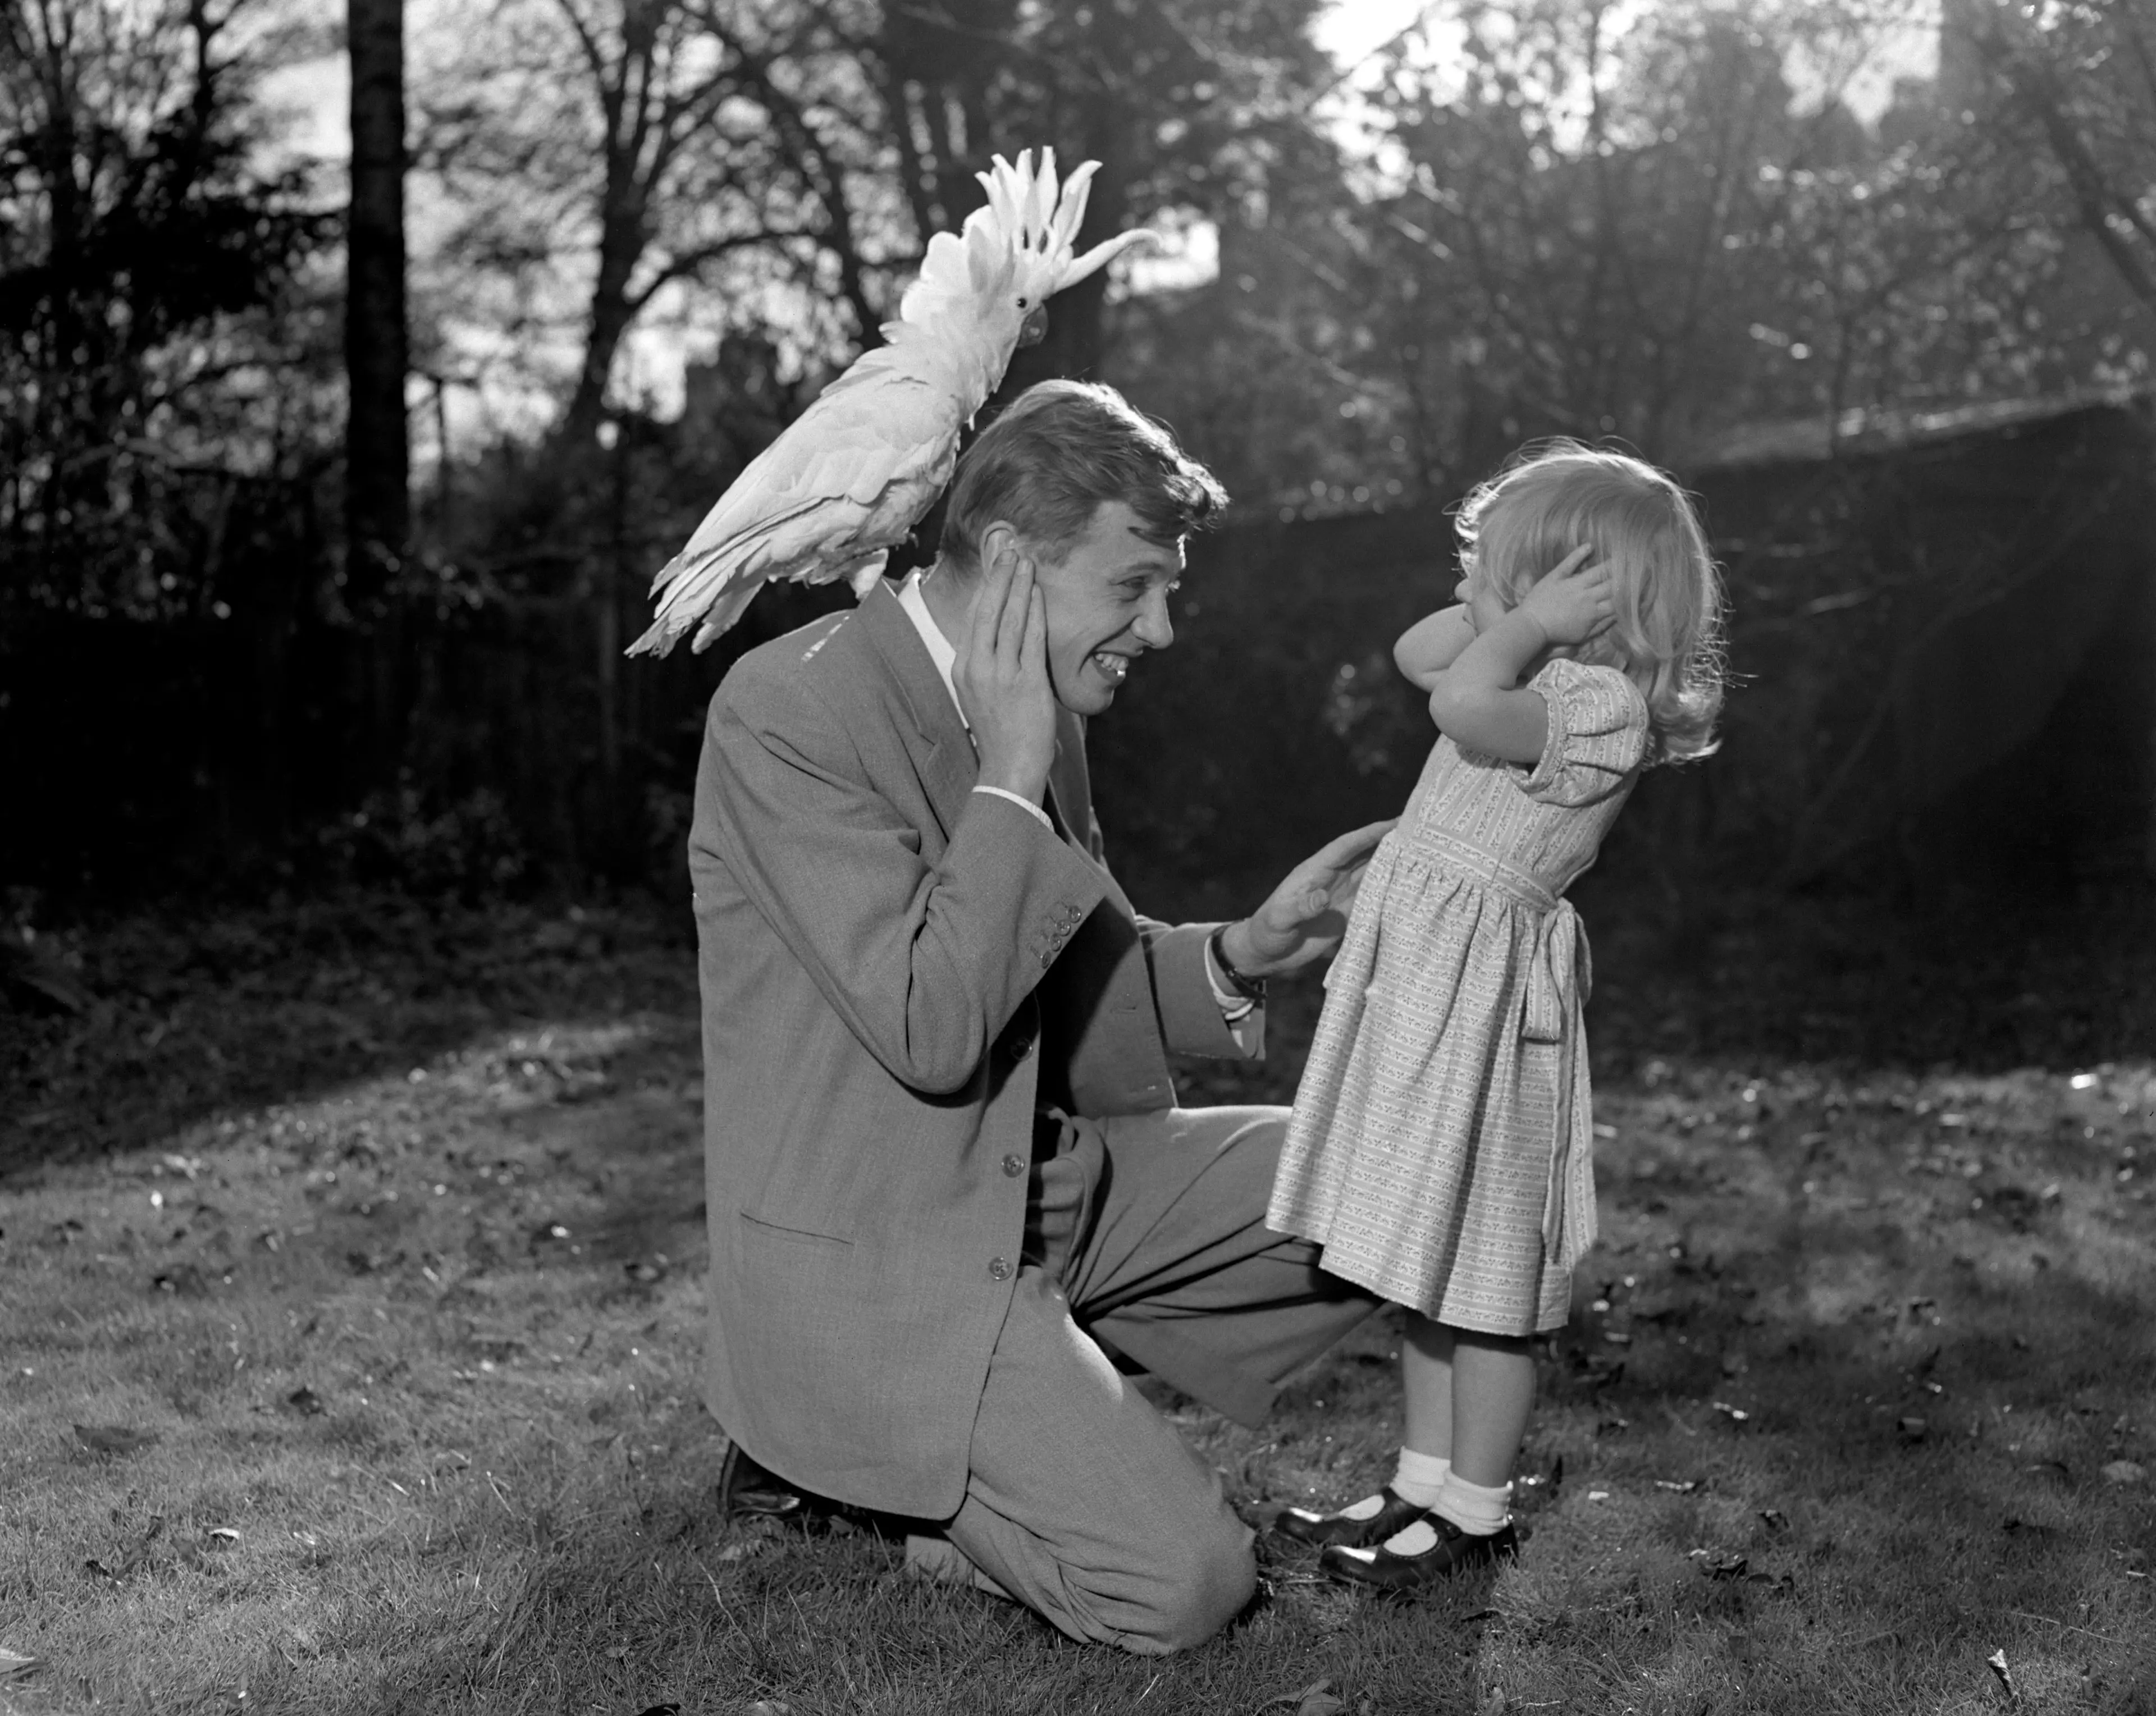 David and his daughter Susan in 1957 (